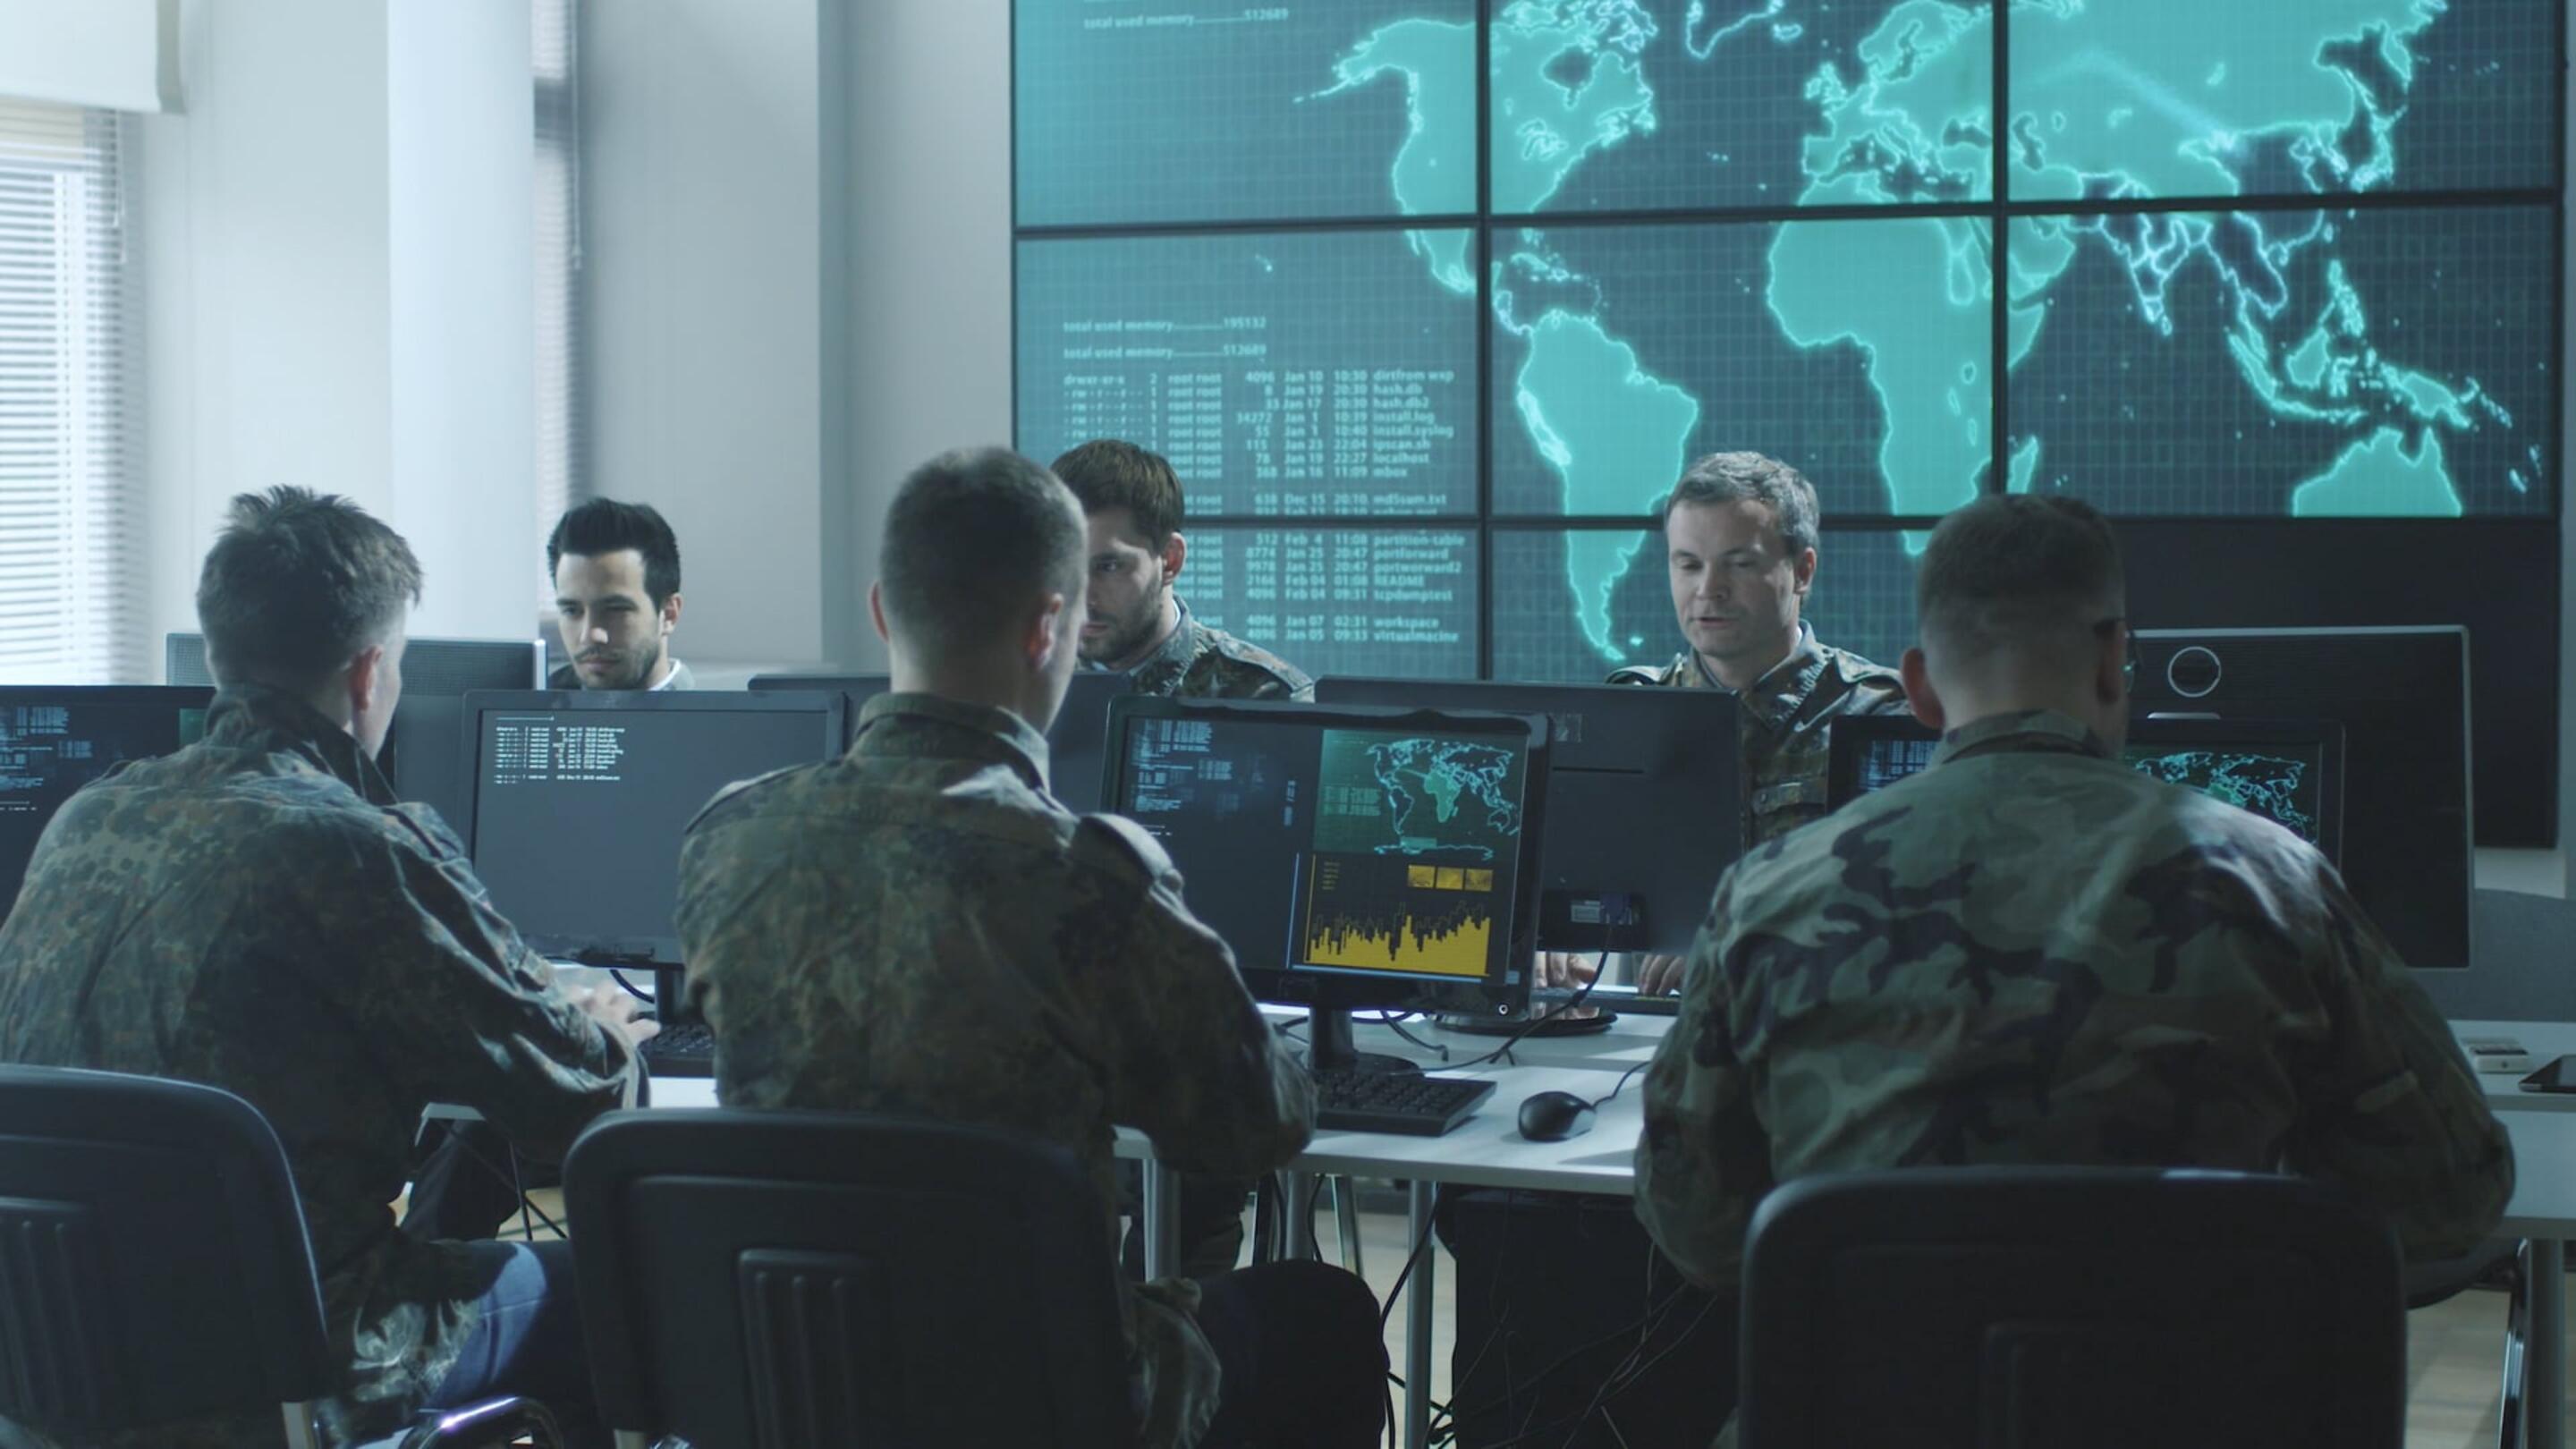 Tempest - Tempest eine Gruppe von Männern in Militäruniformen, die an Computern sitzen